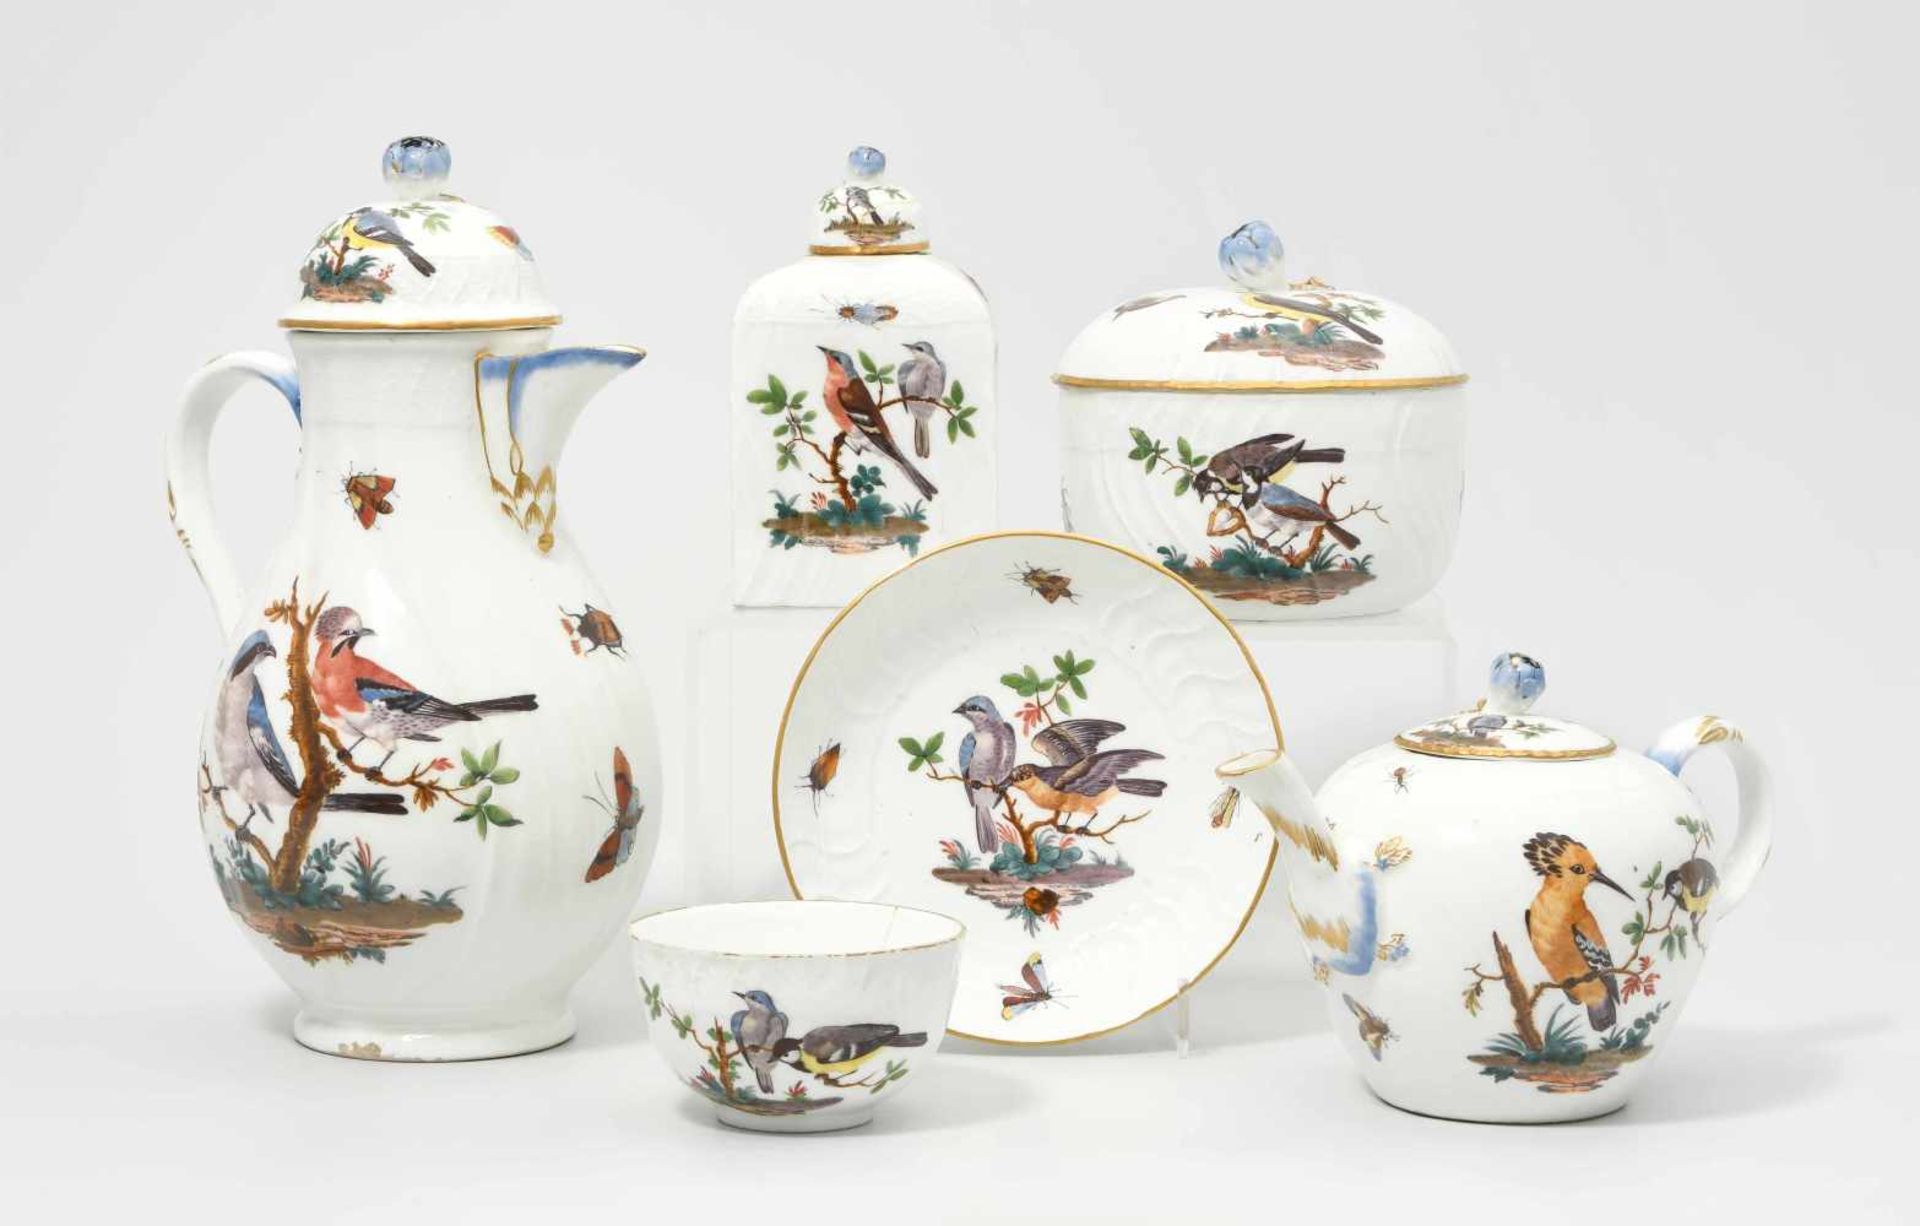 Kaffee- und Teeservice, Meissen Um 1770. Porzellan, Neuozier-Reliefdekor, polychrome Vogelmalerei